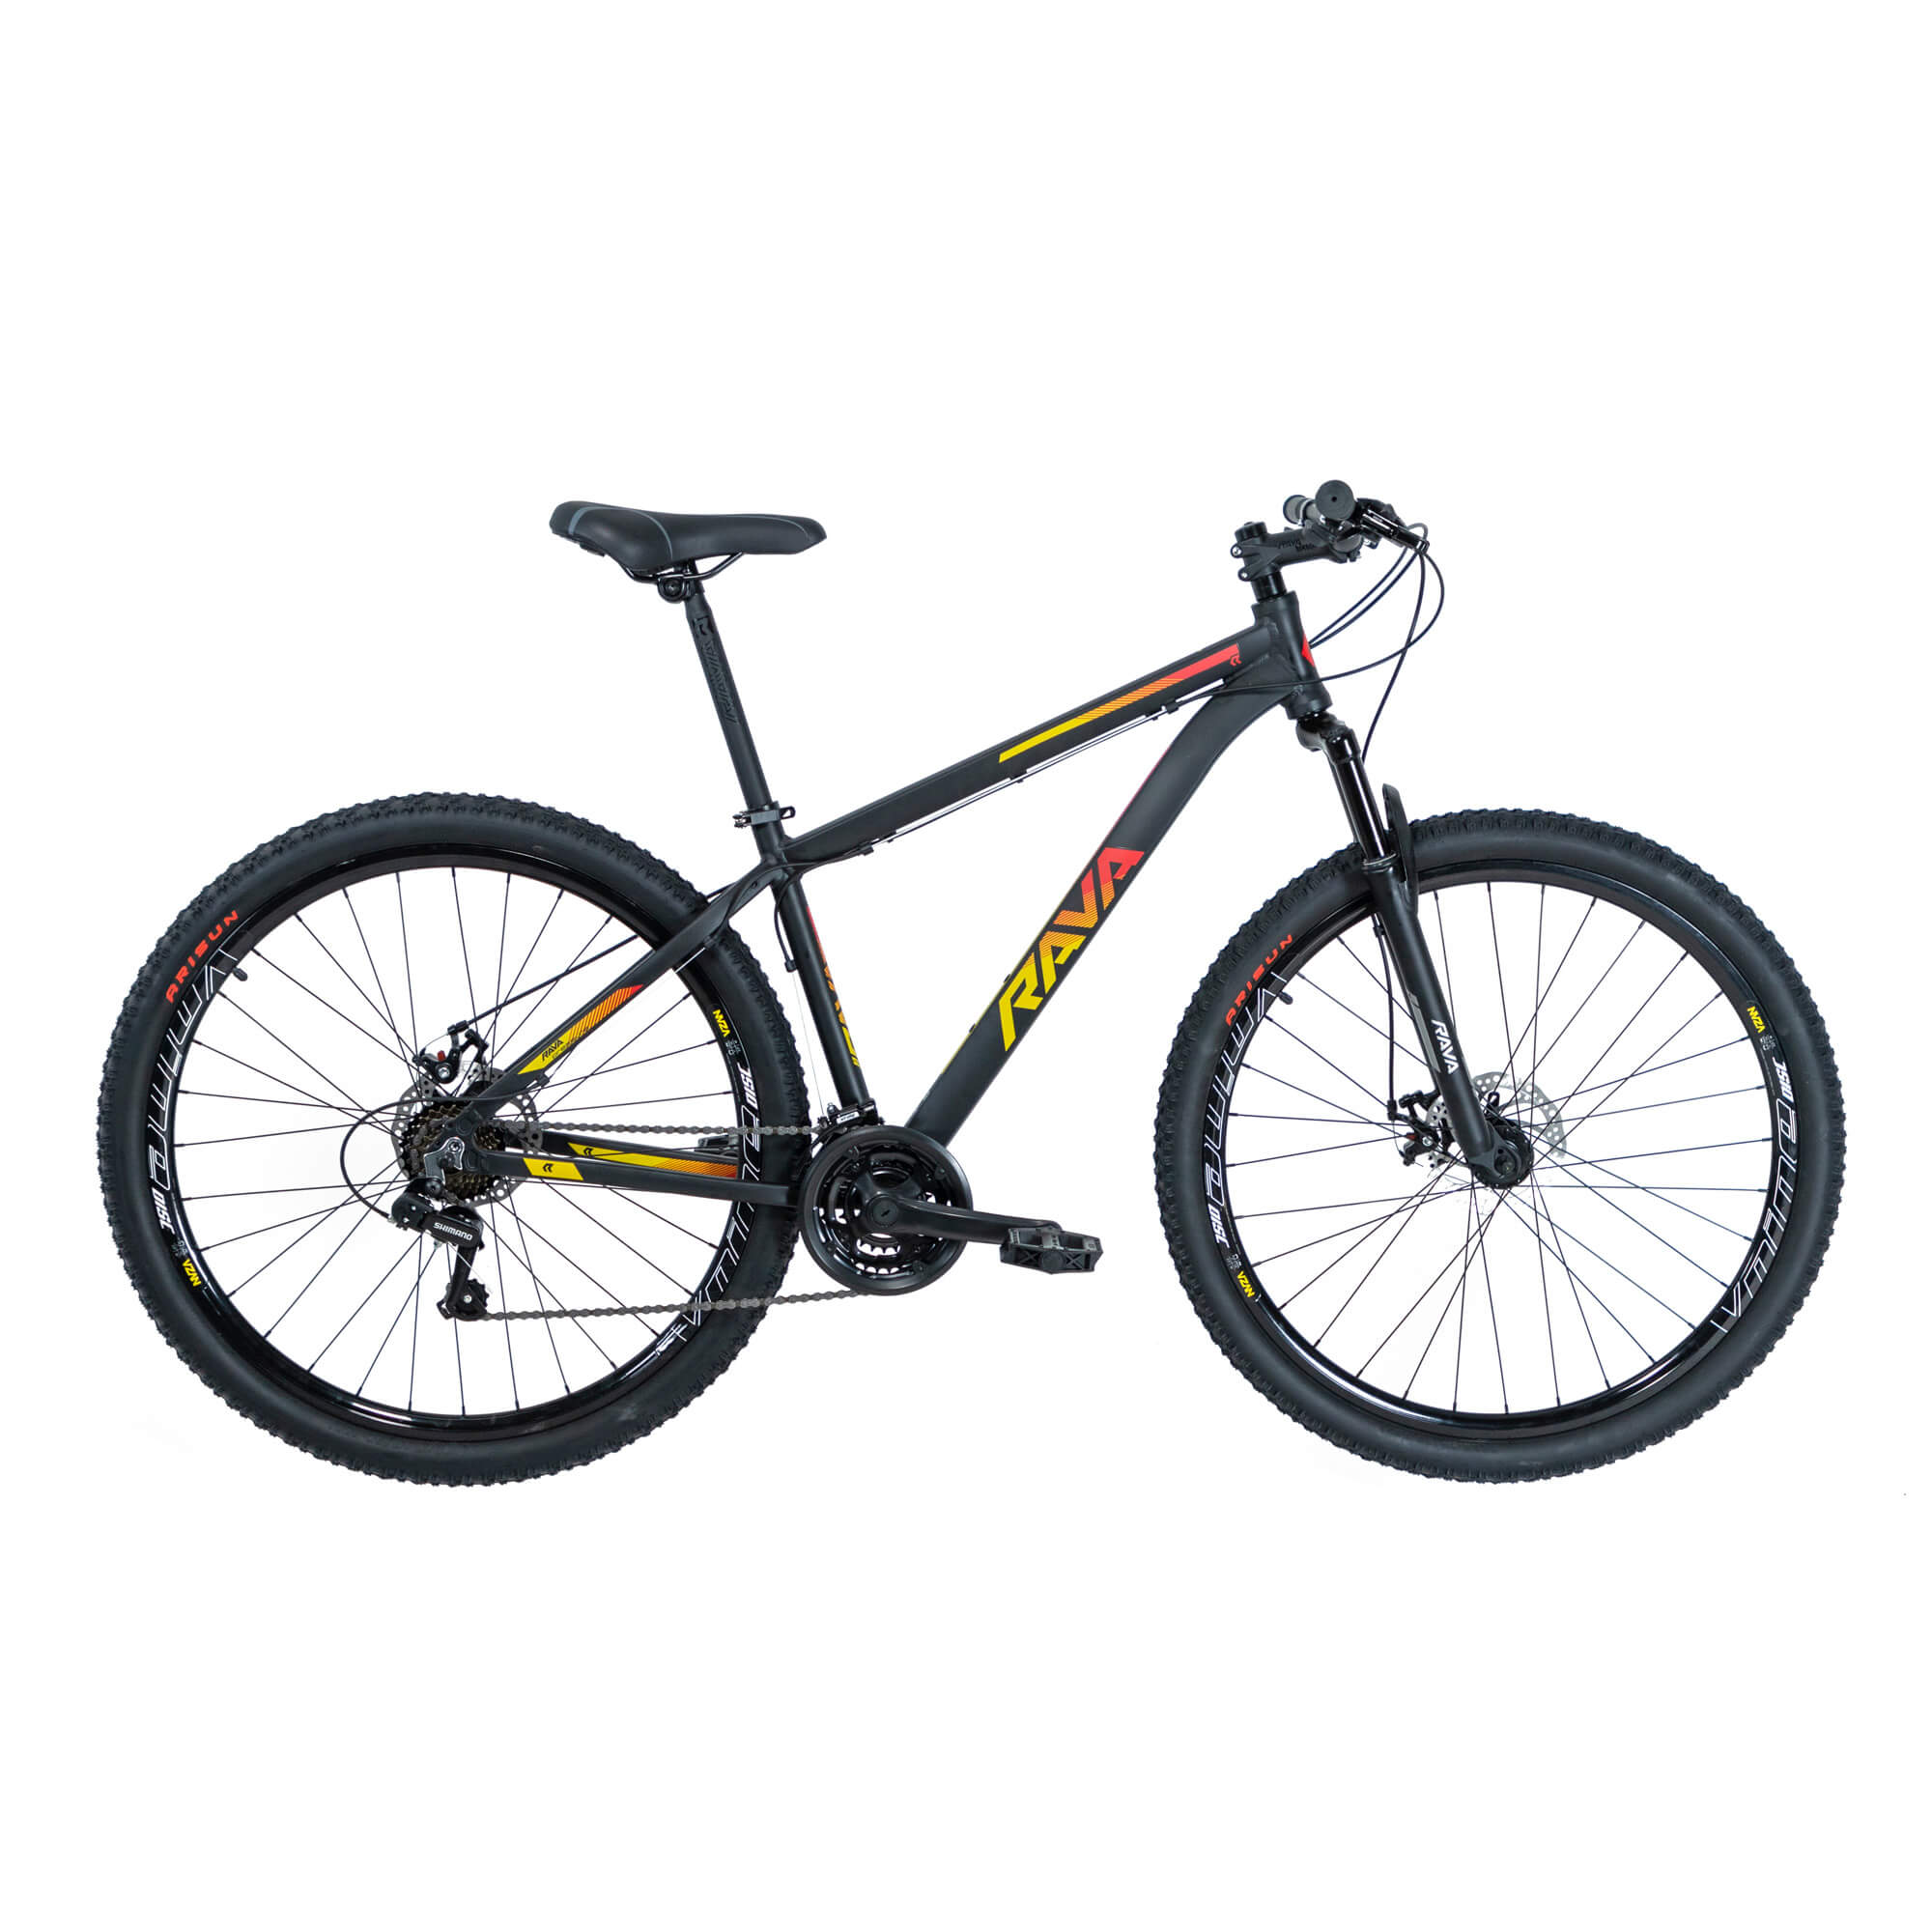 Bicicleta Rava Pressure 2019/2020 | 21 v. - Preto/Vermelho/Amarelo, 17"